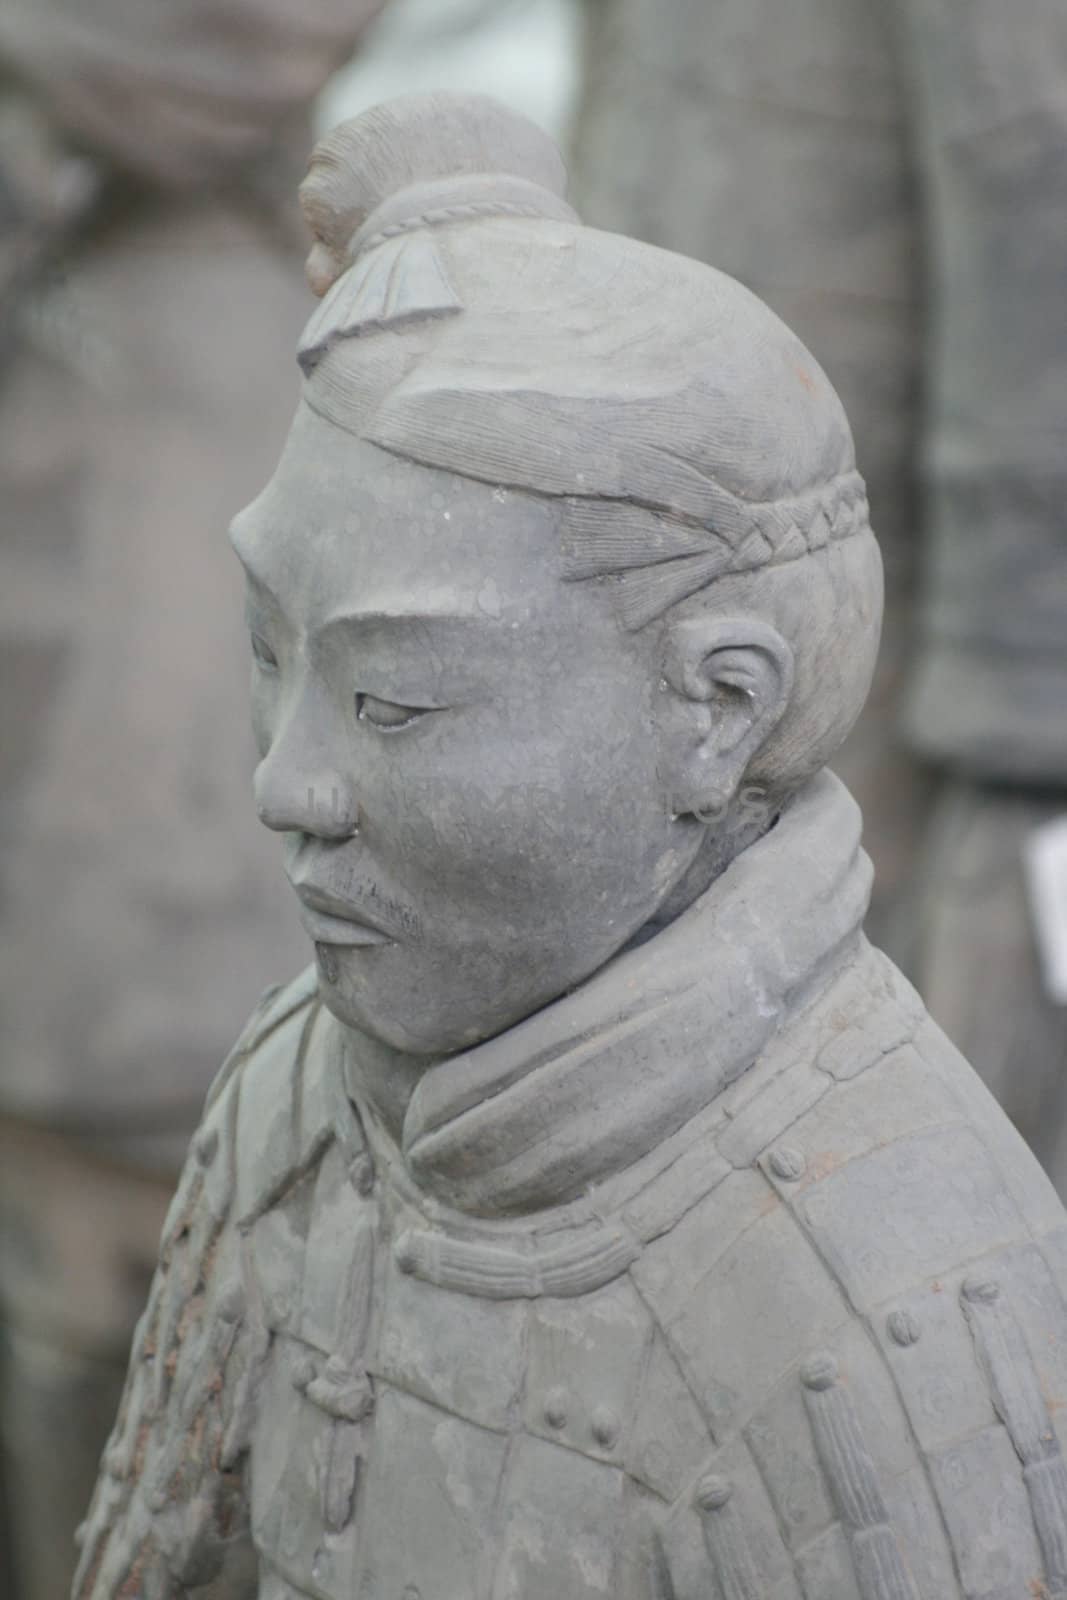 Terracotta Army Xian / Xi'an, China - Detail - fac by koep